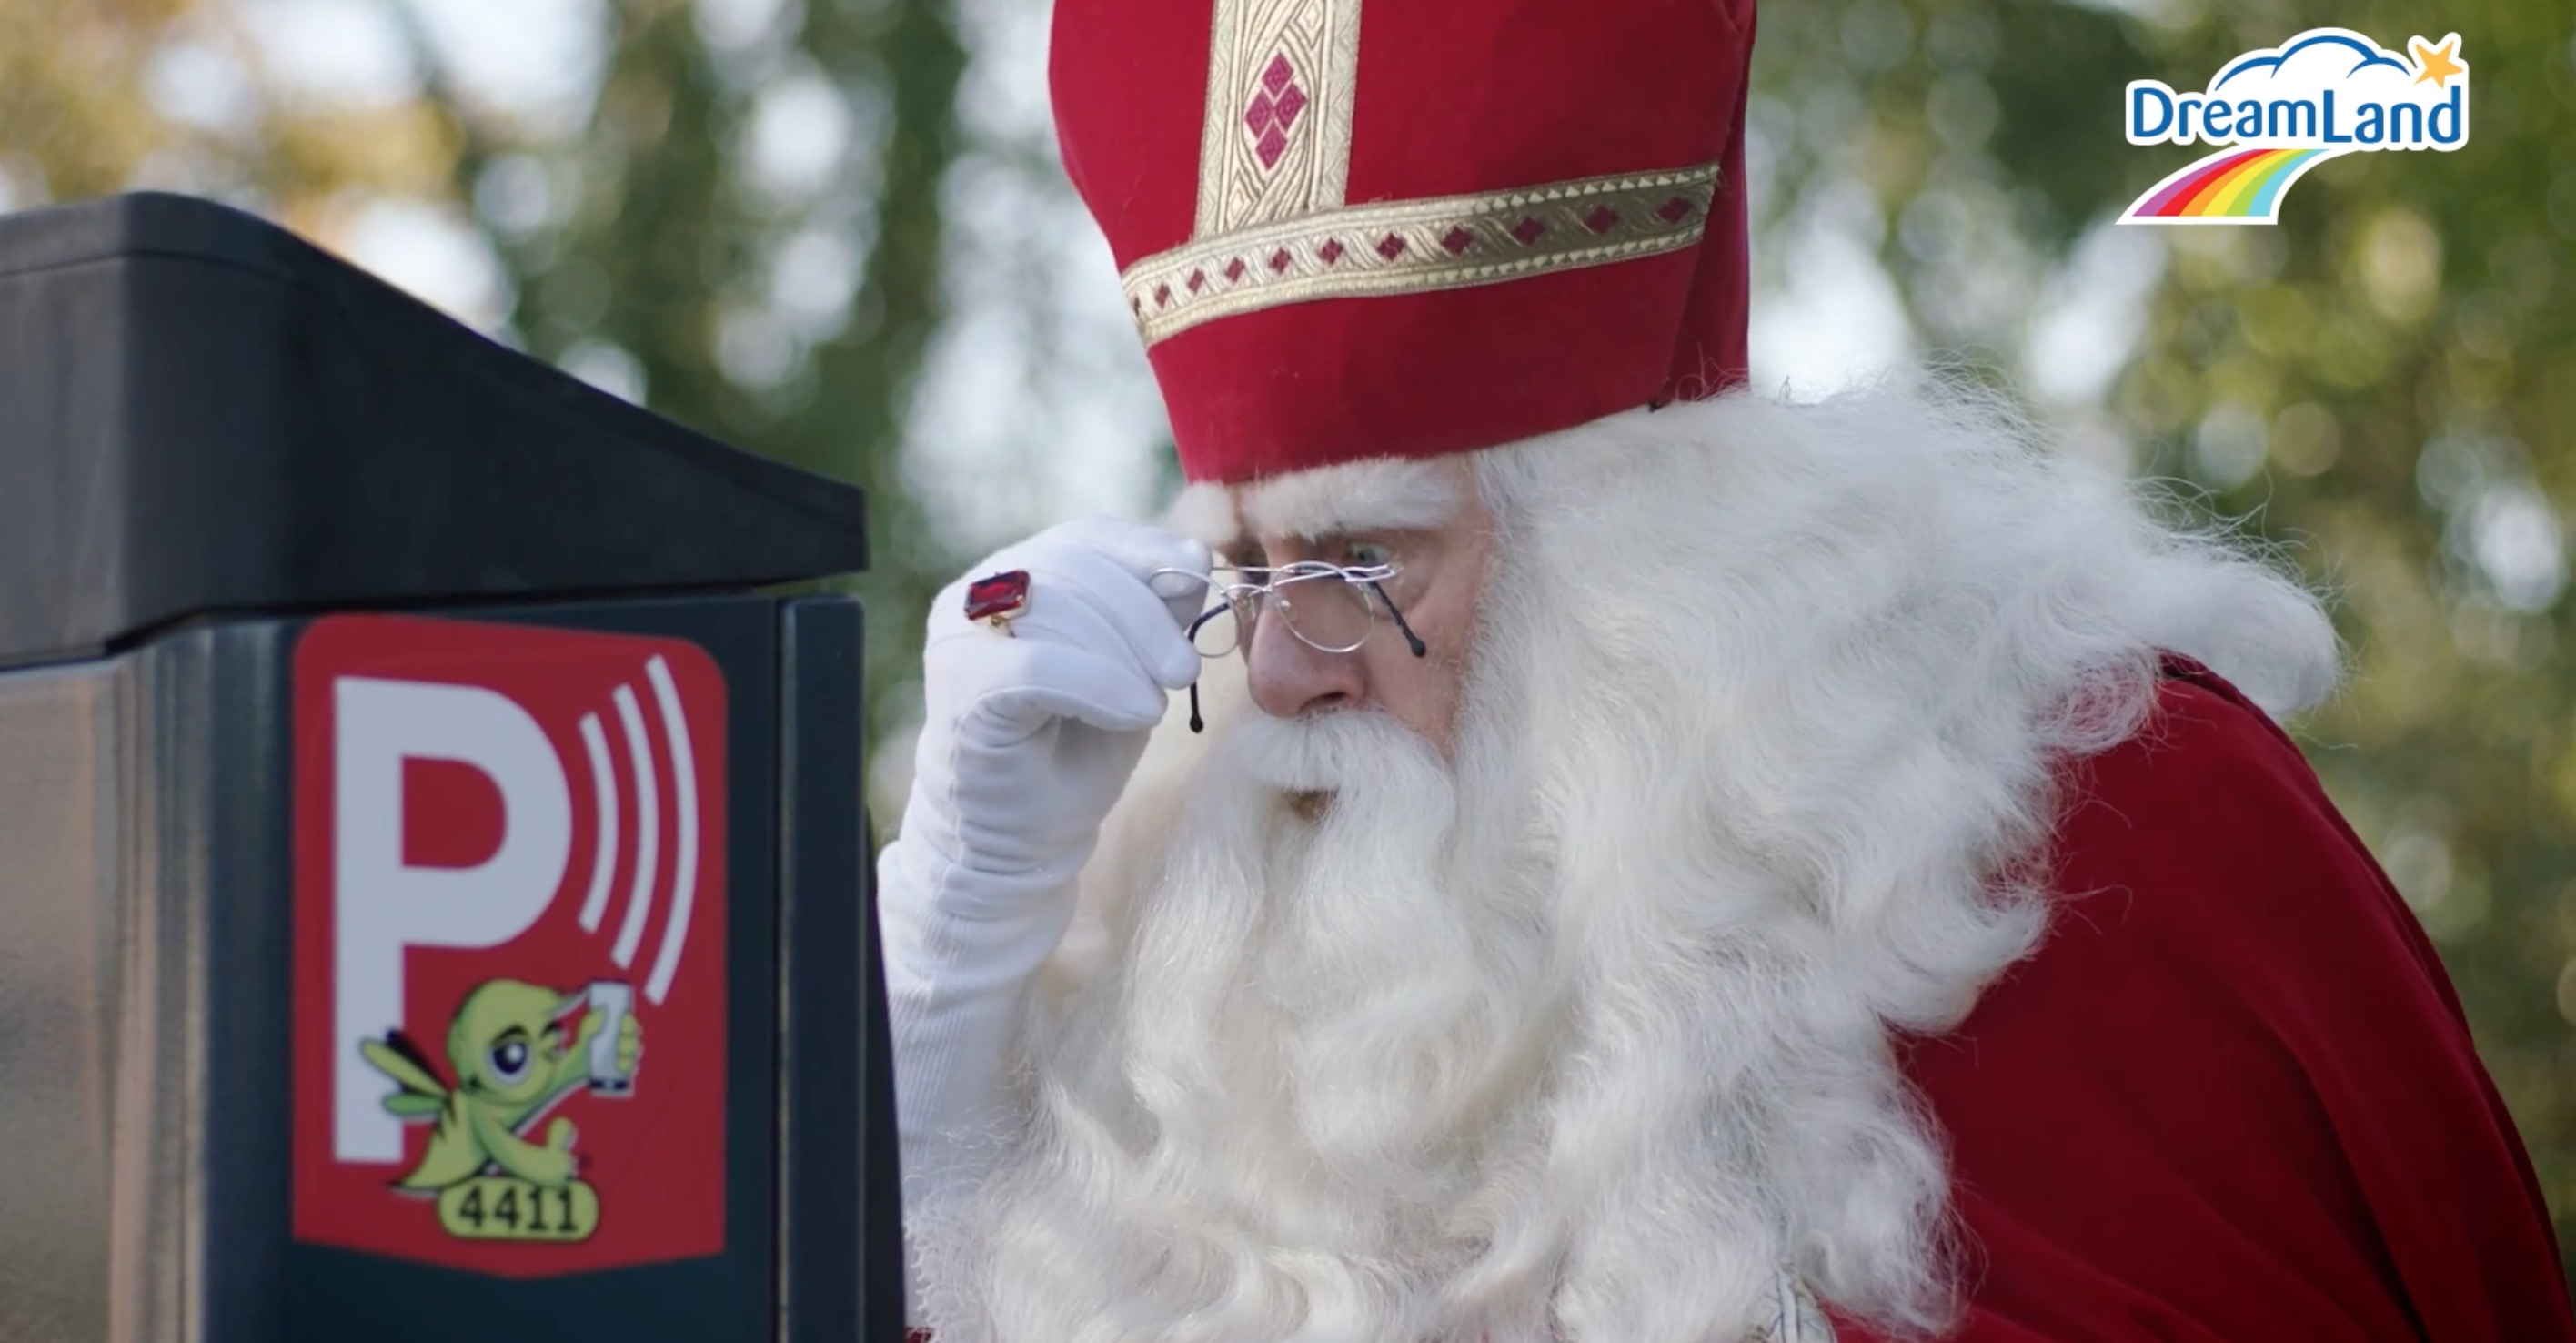 Dreamland helpt Sinterklaas een handje